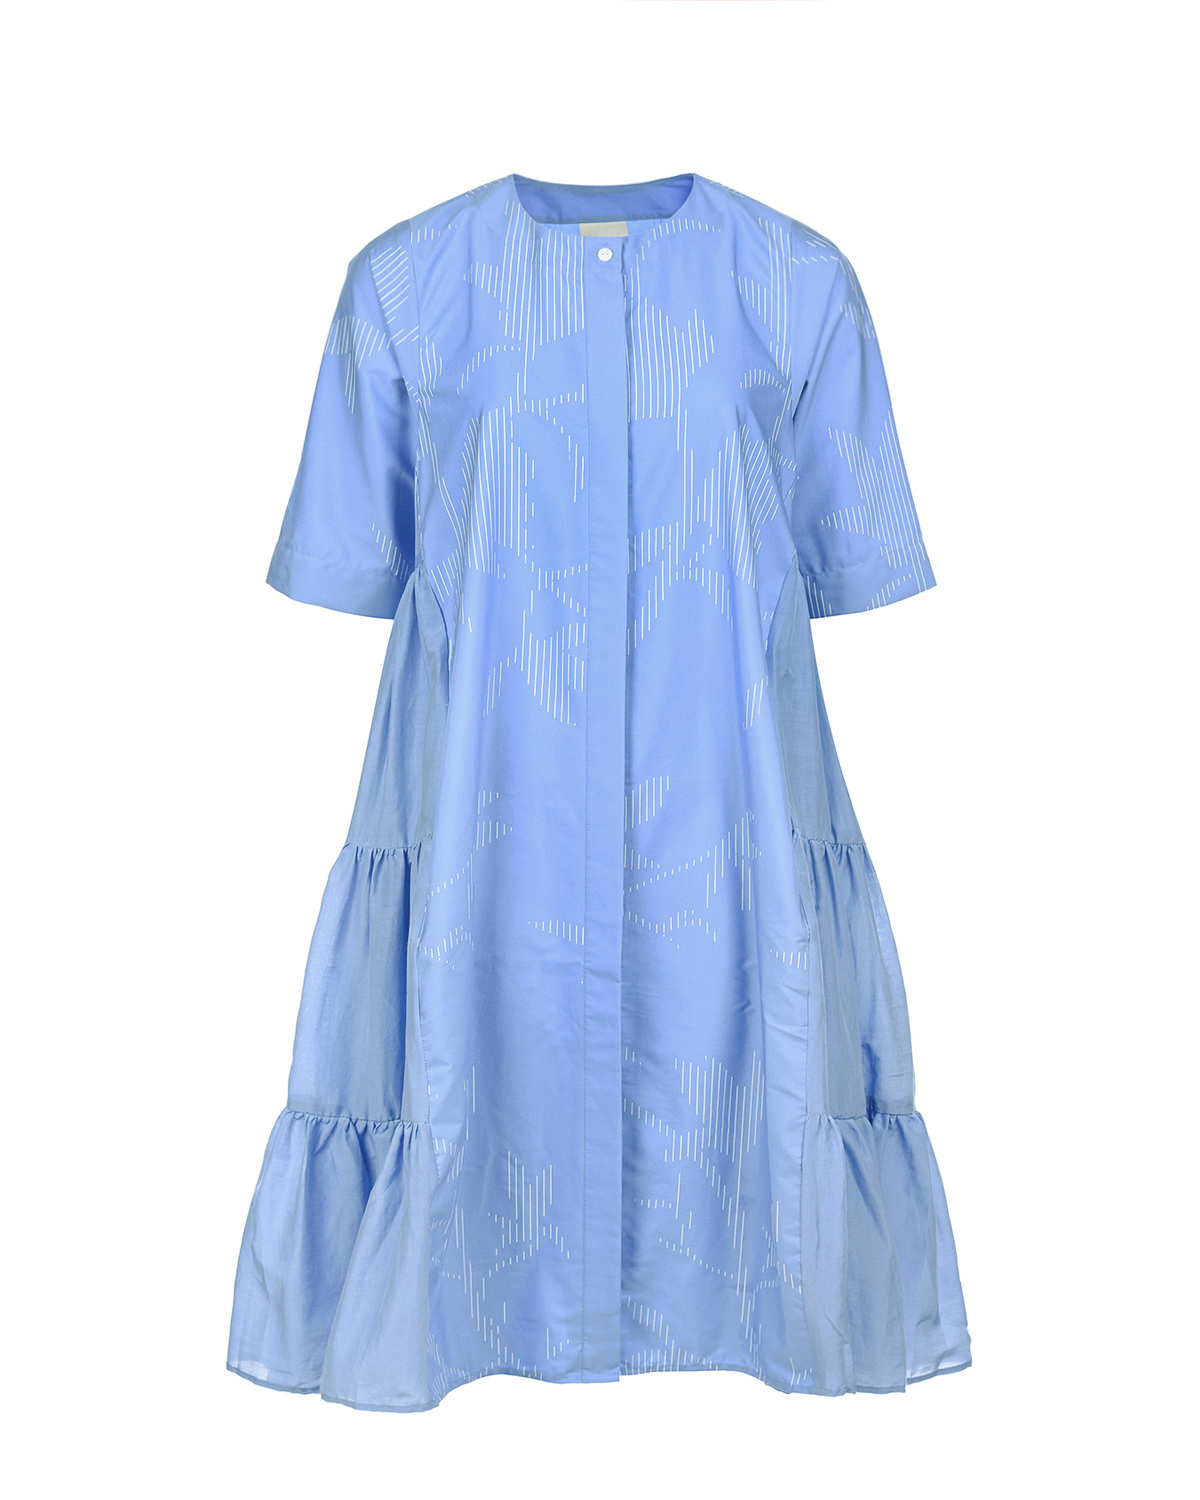 Голубое расклешенное платье LOVE BIRDS, размер 38, цвет голубой - фото 1